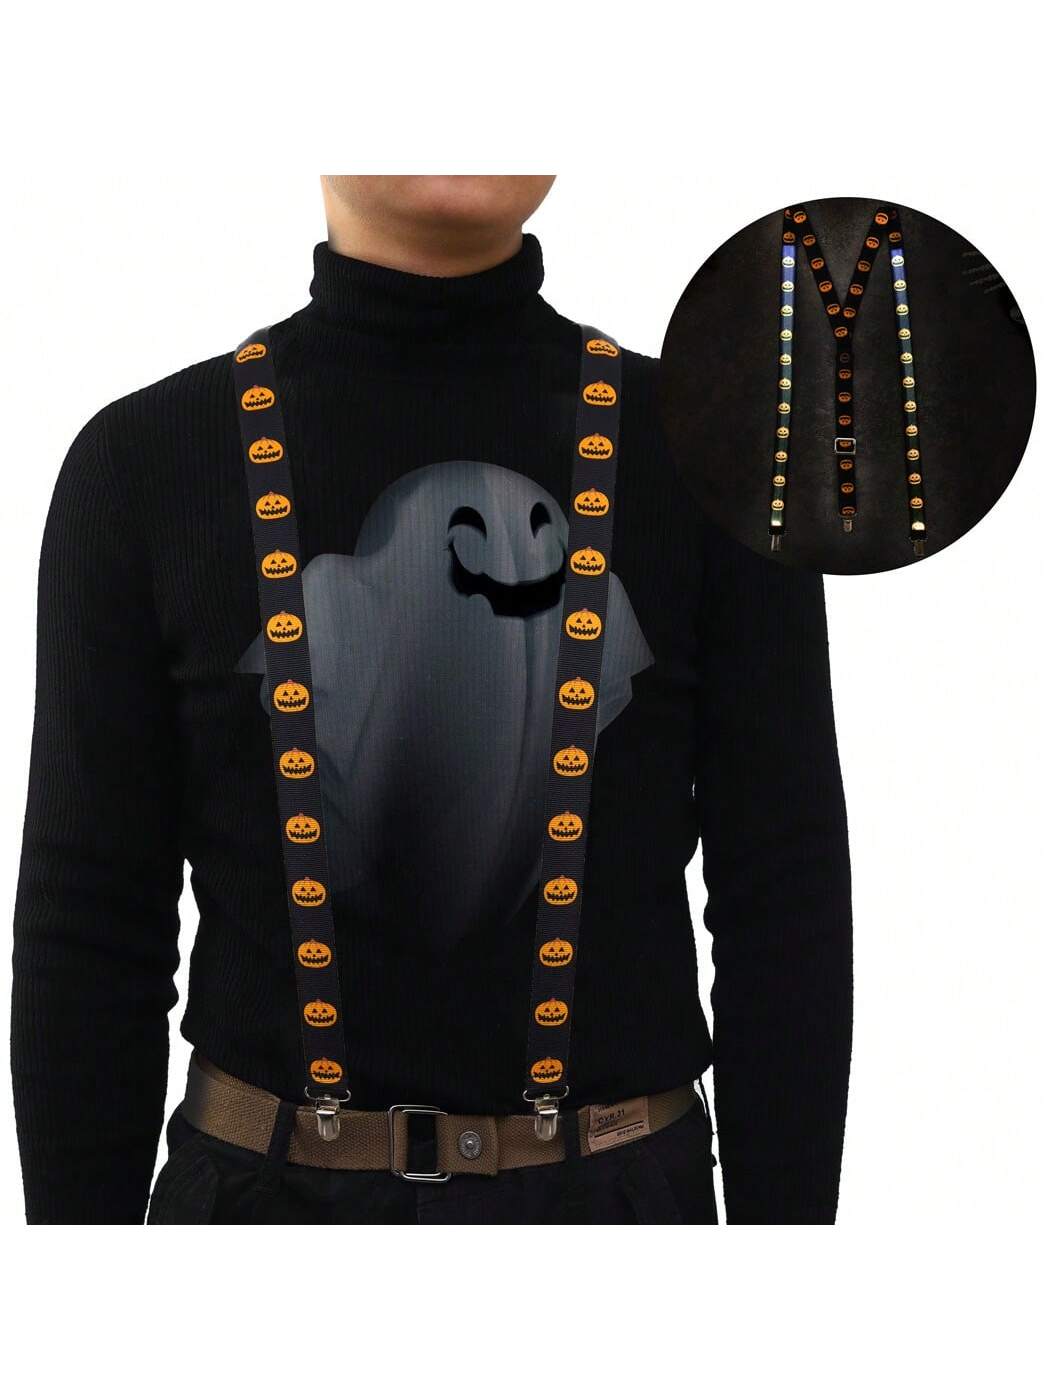 DRESBE светодиодные подтяжки с подсветкой, черный jyzcos надувные костюмы повязки забавный стул реквизит карнавал рождество вечеринка борец маскарадный костюм на хэллоуин для мужчин и взр